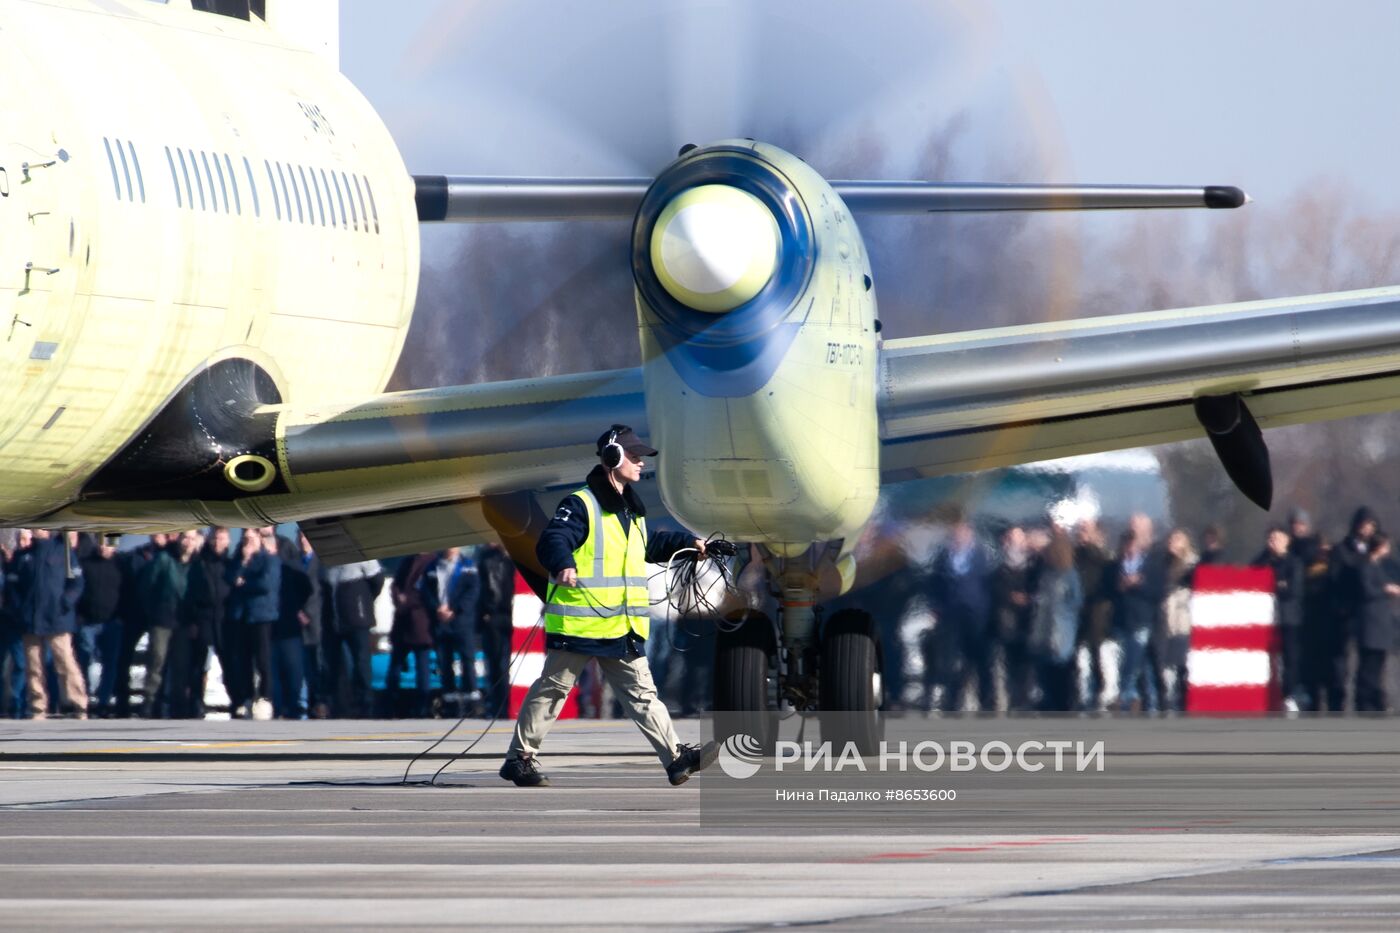 ОАК возобновила программу летных испытаний самолета Ил-114-300